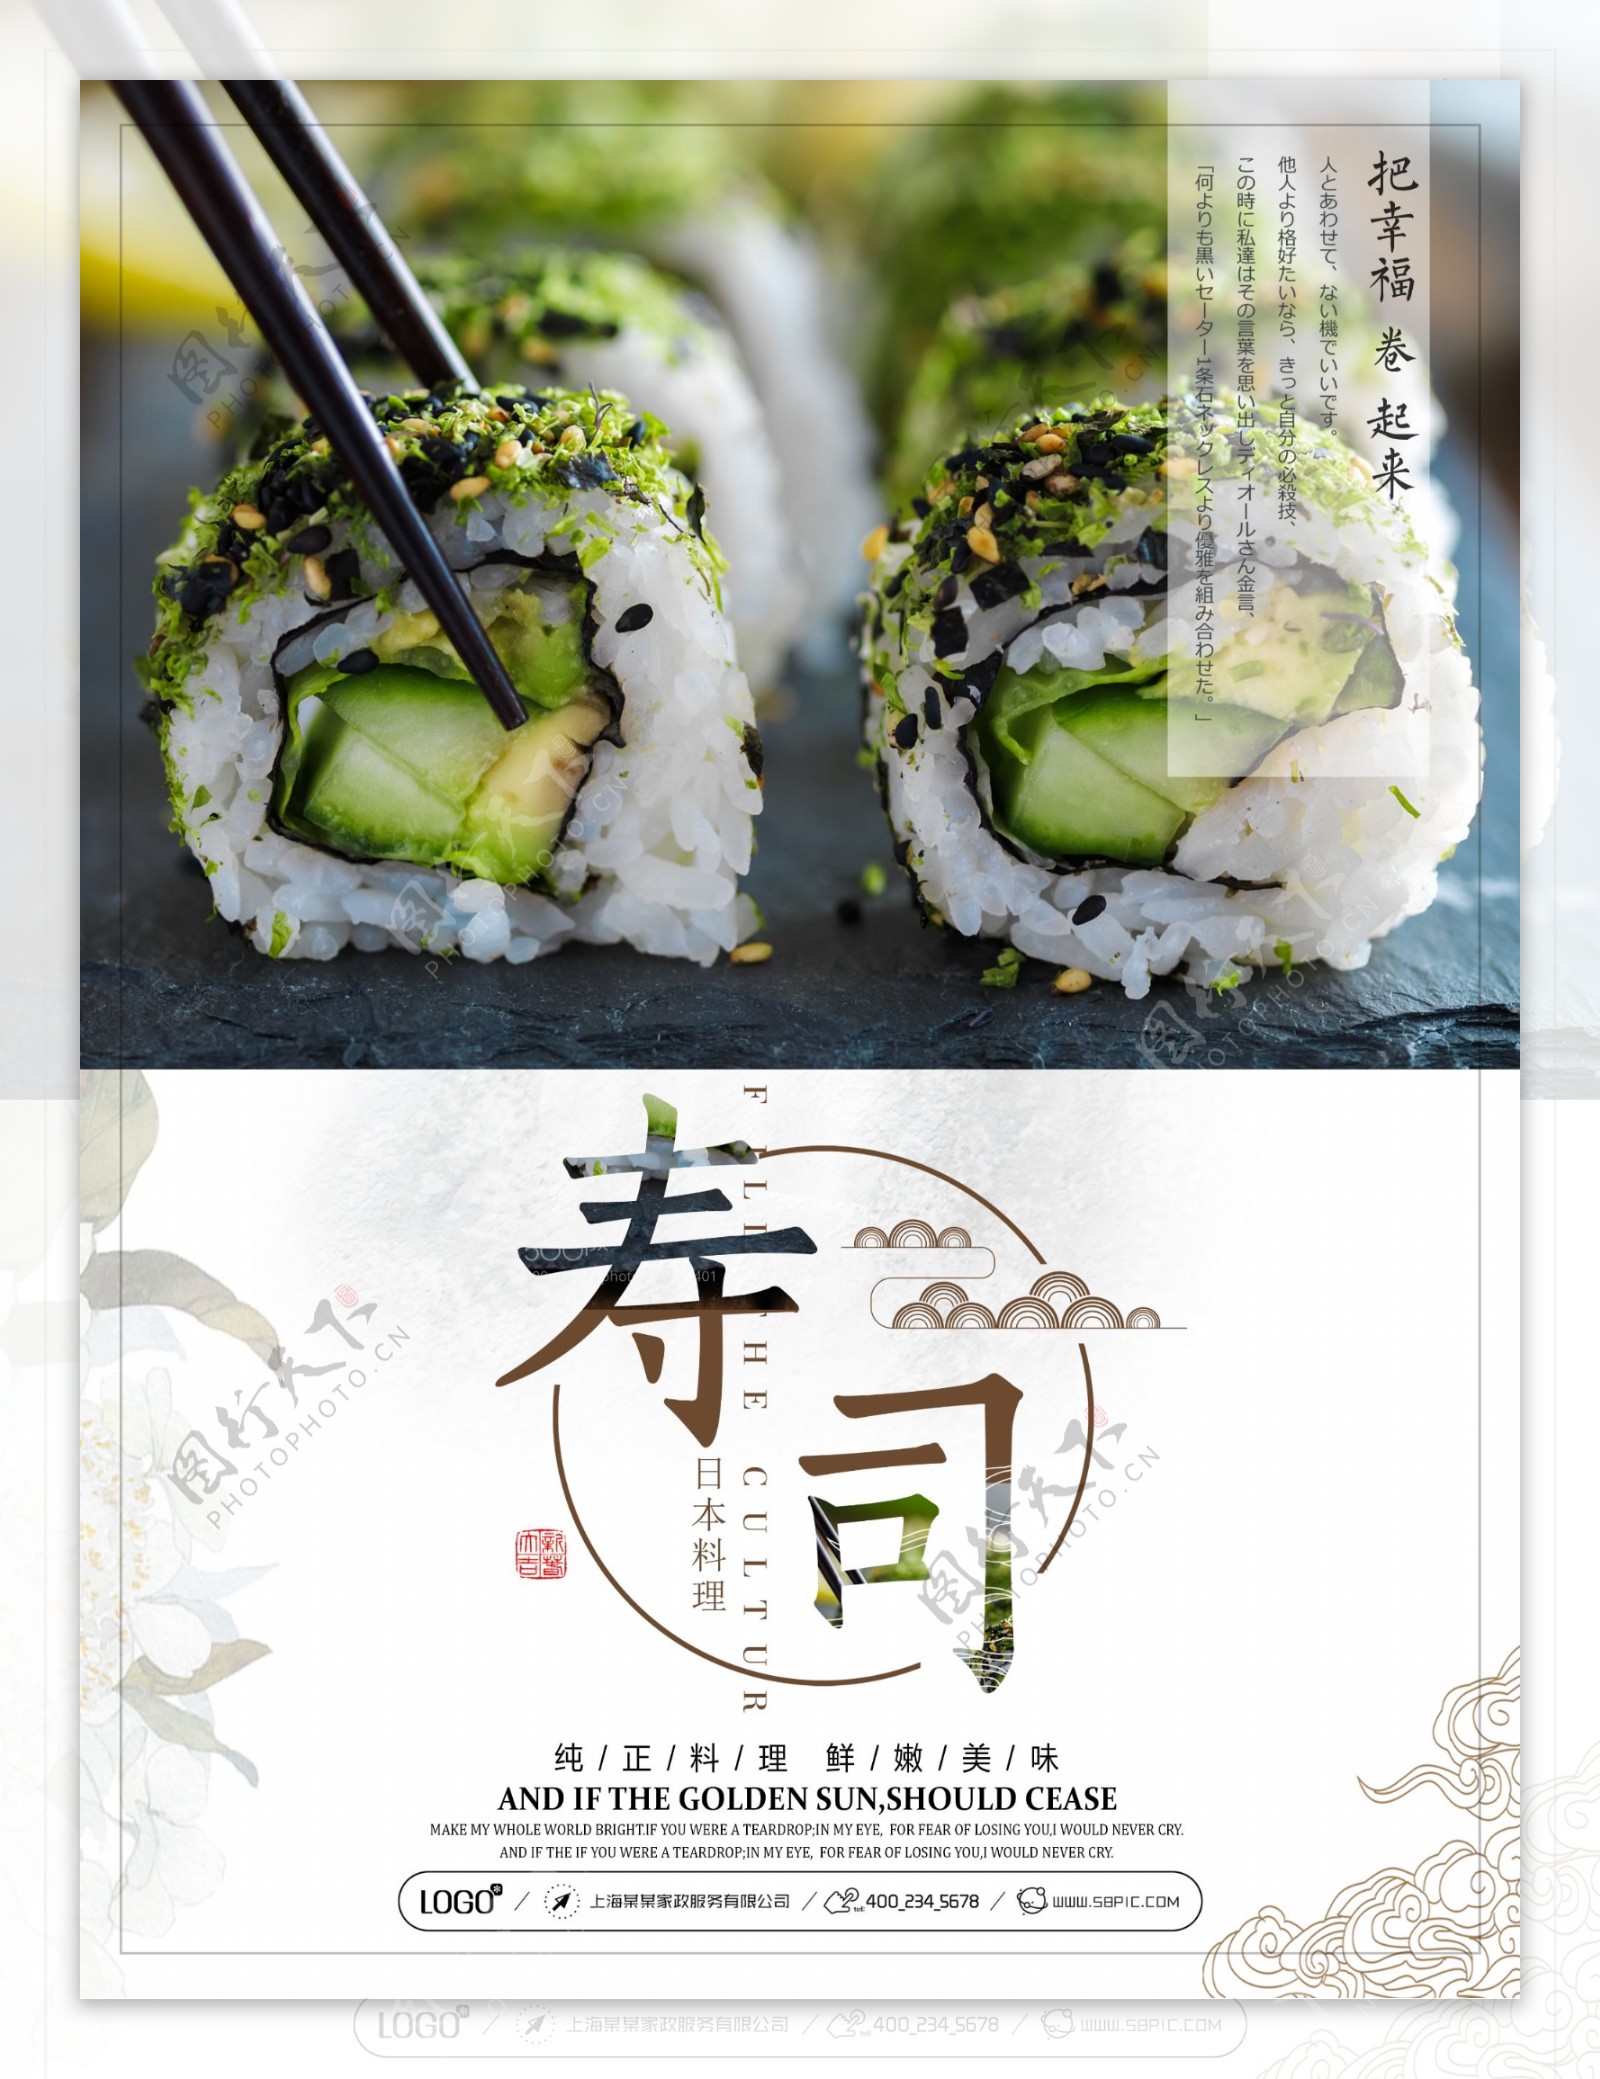 美食寿司海报